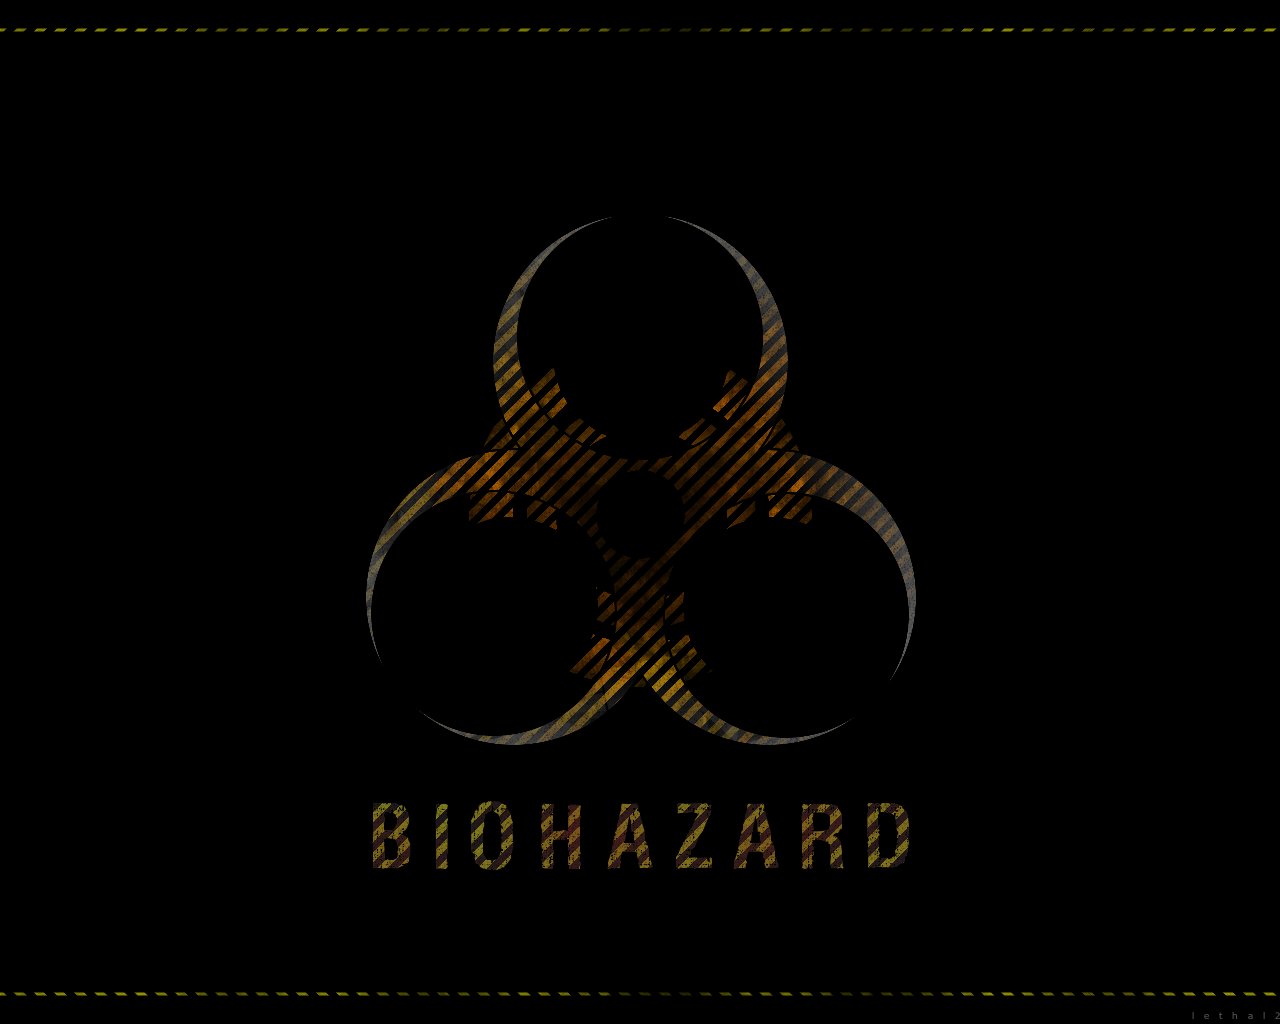 biohazard iphone wallpaper